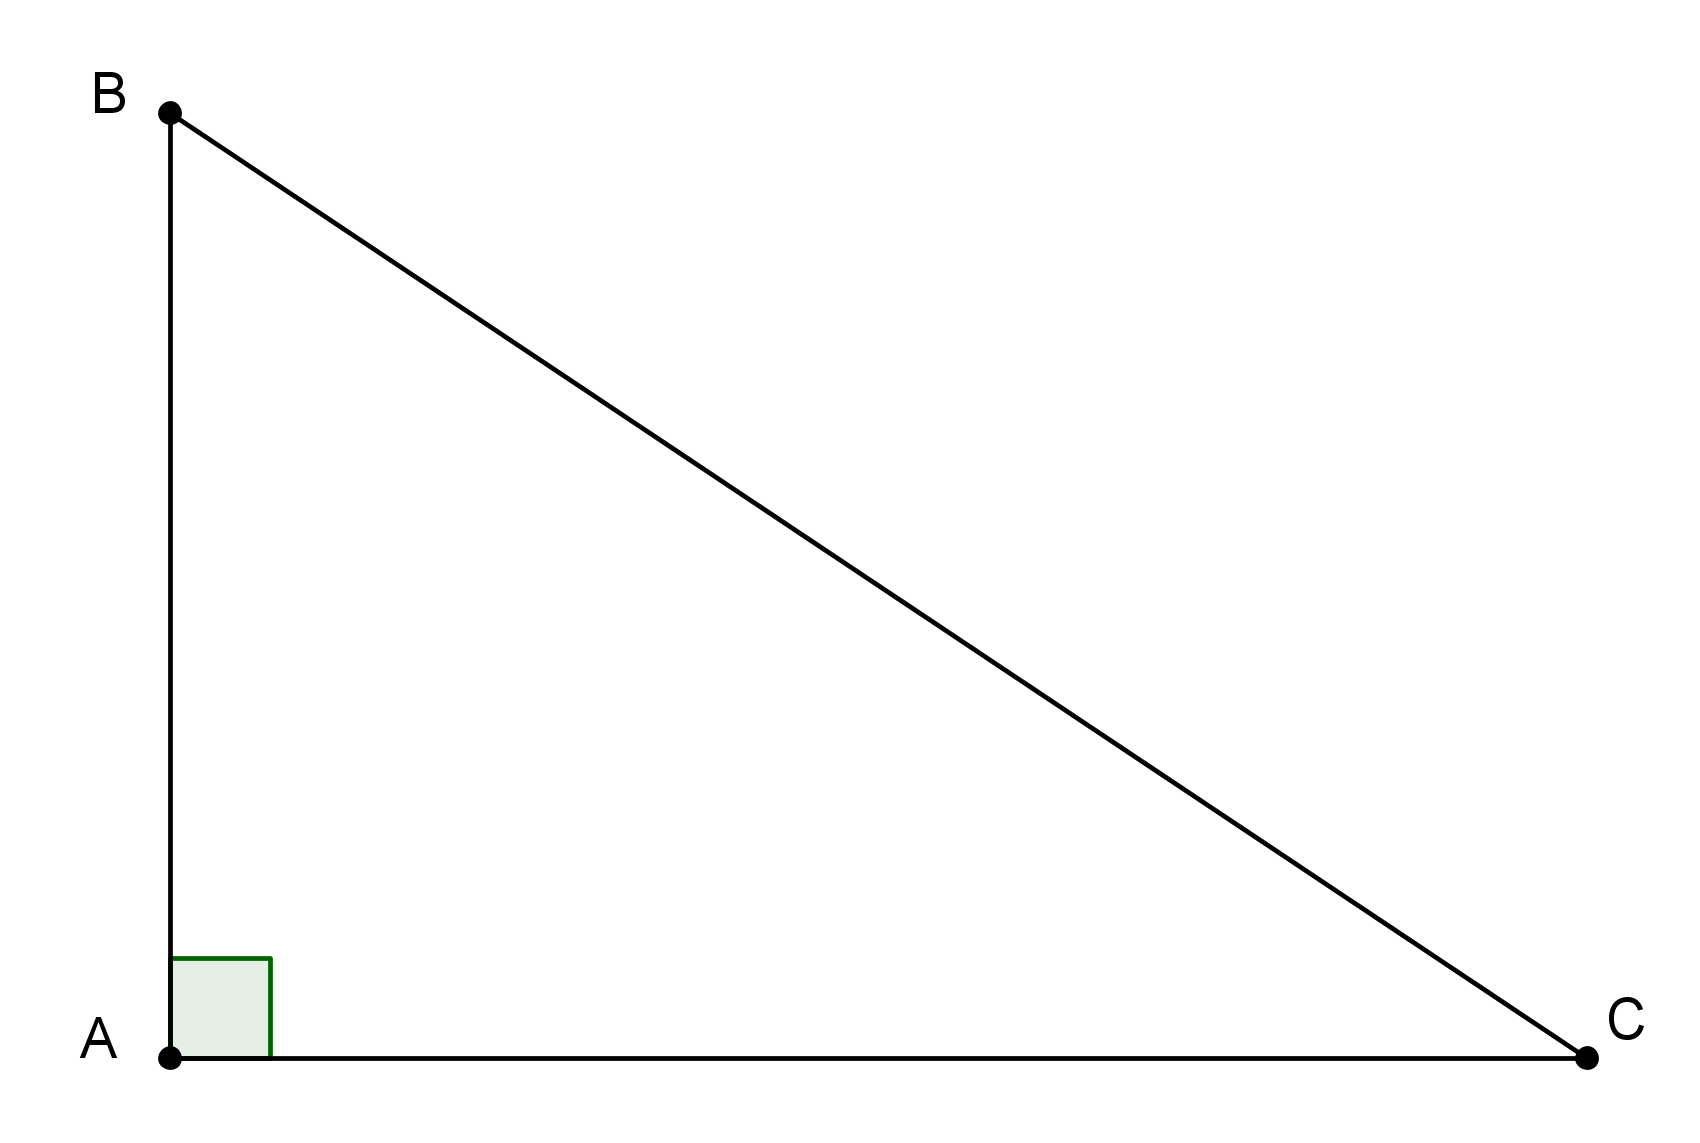 Triángulo Rectángulo: Qué es, Características y Tipos - Enciclopedia  Significados